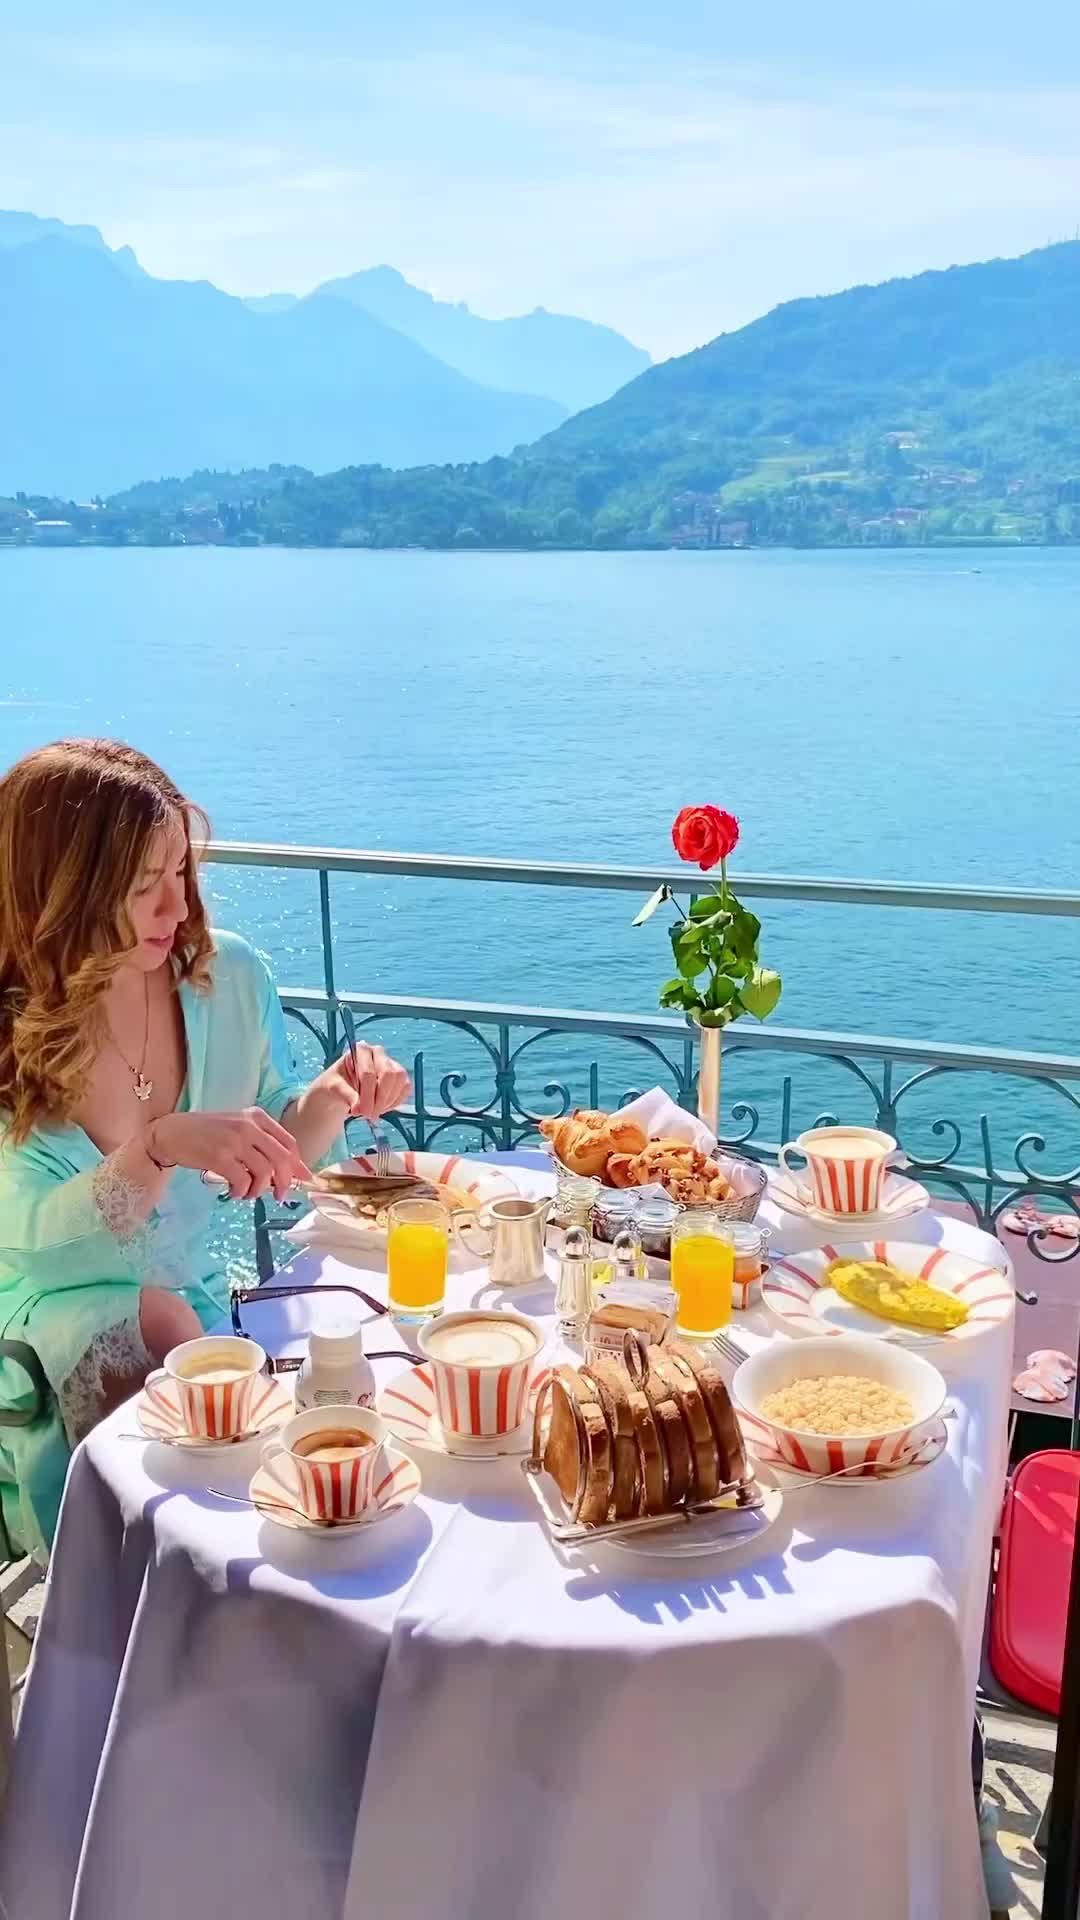 Breakfast Goals at Grand Hotel Tremezzo, Lake Como